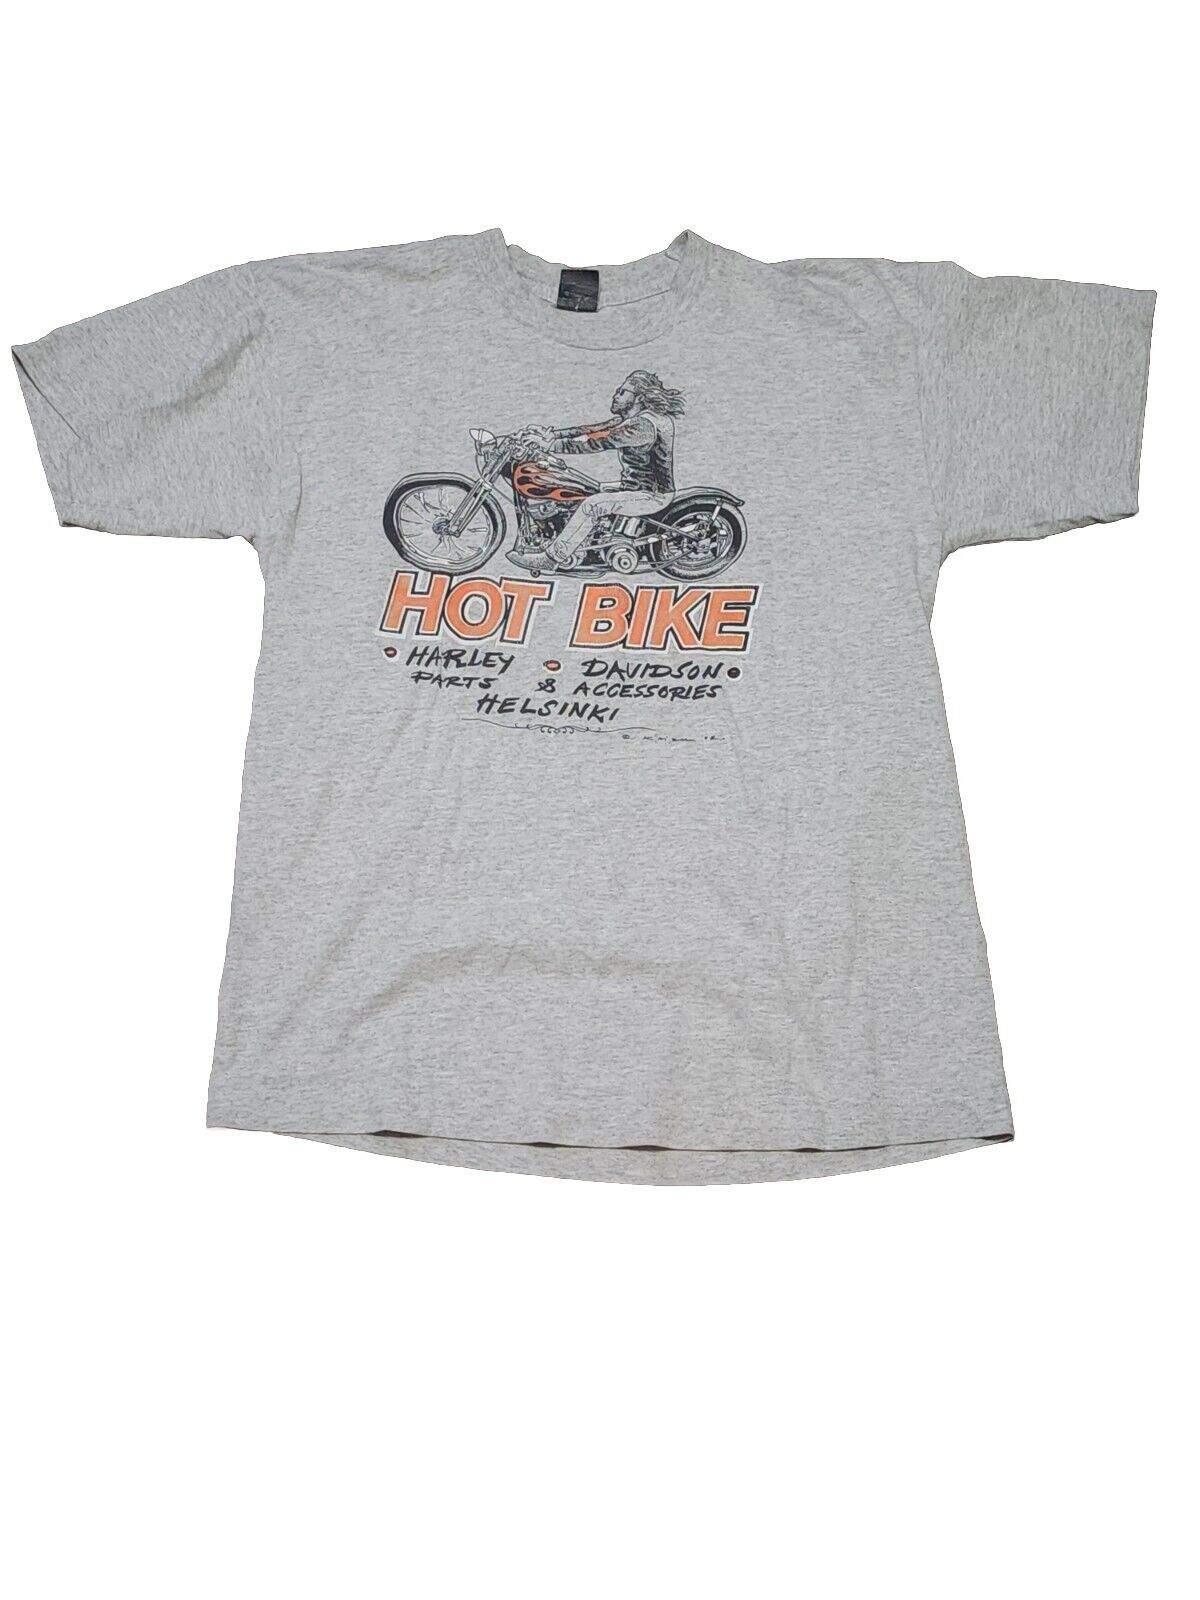 Vintage Harley Davidson 1992 Hot Bike Helsinski 1992 Shirt Kaizu Signed RARE